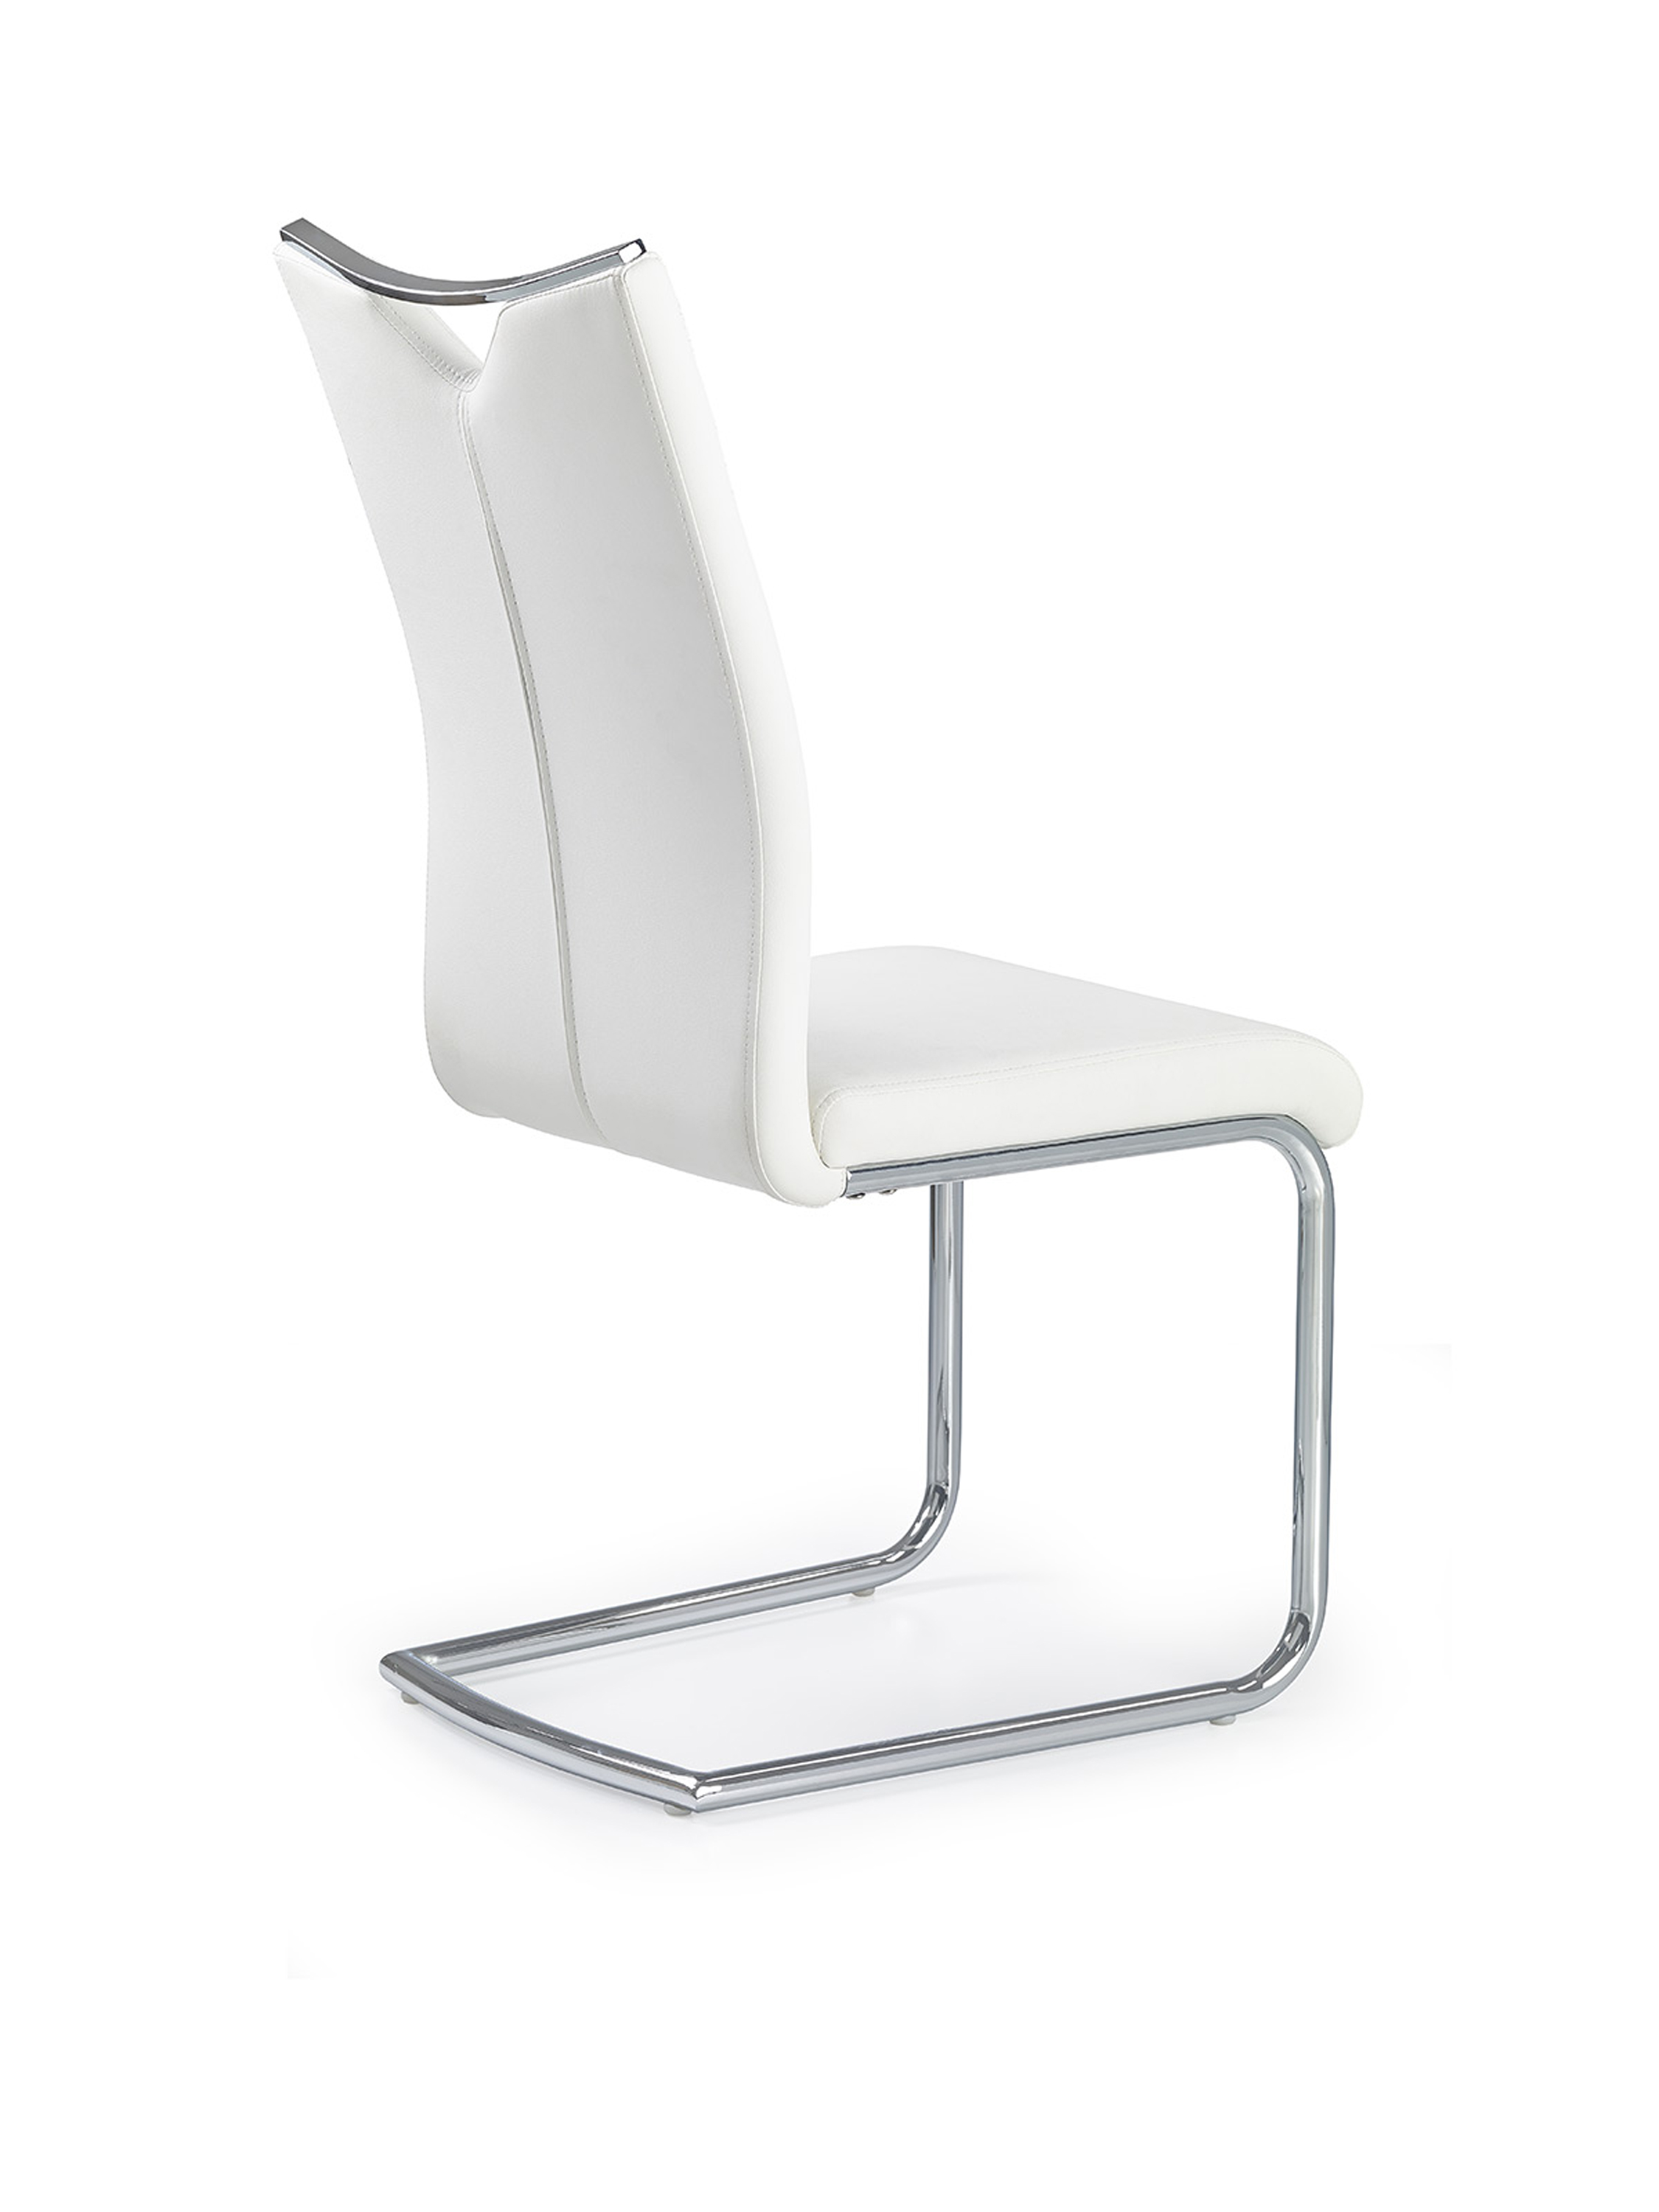 K224 szék - fehér Židle k224 - Bílý